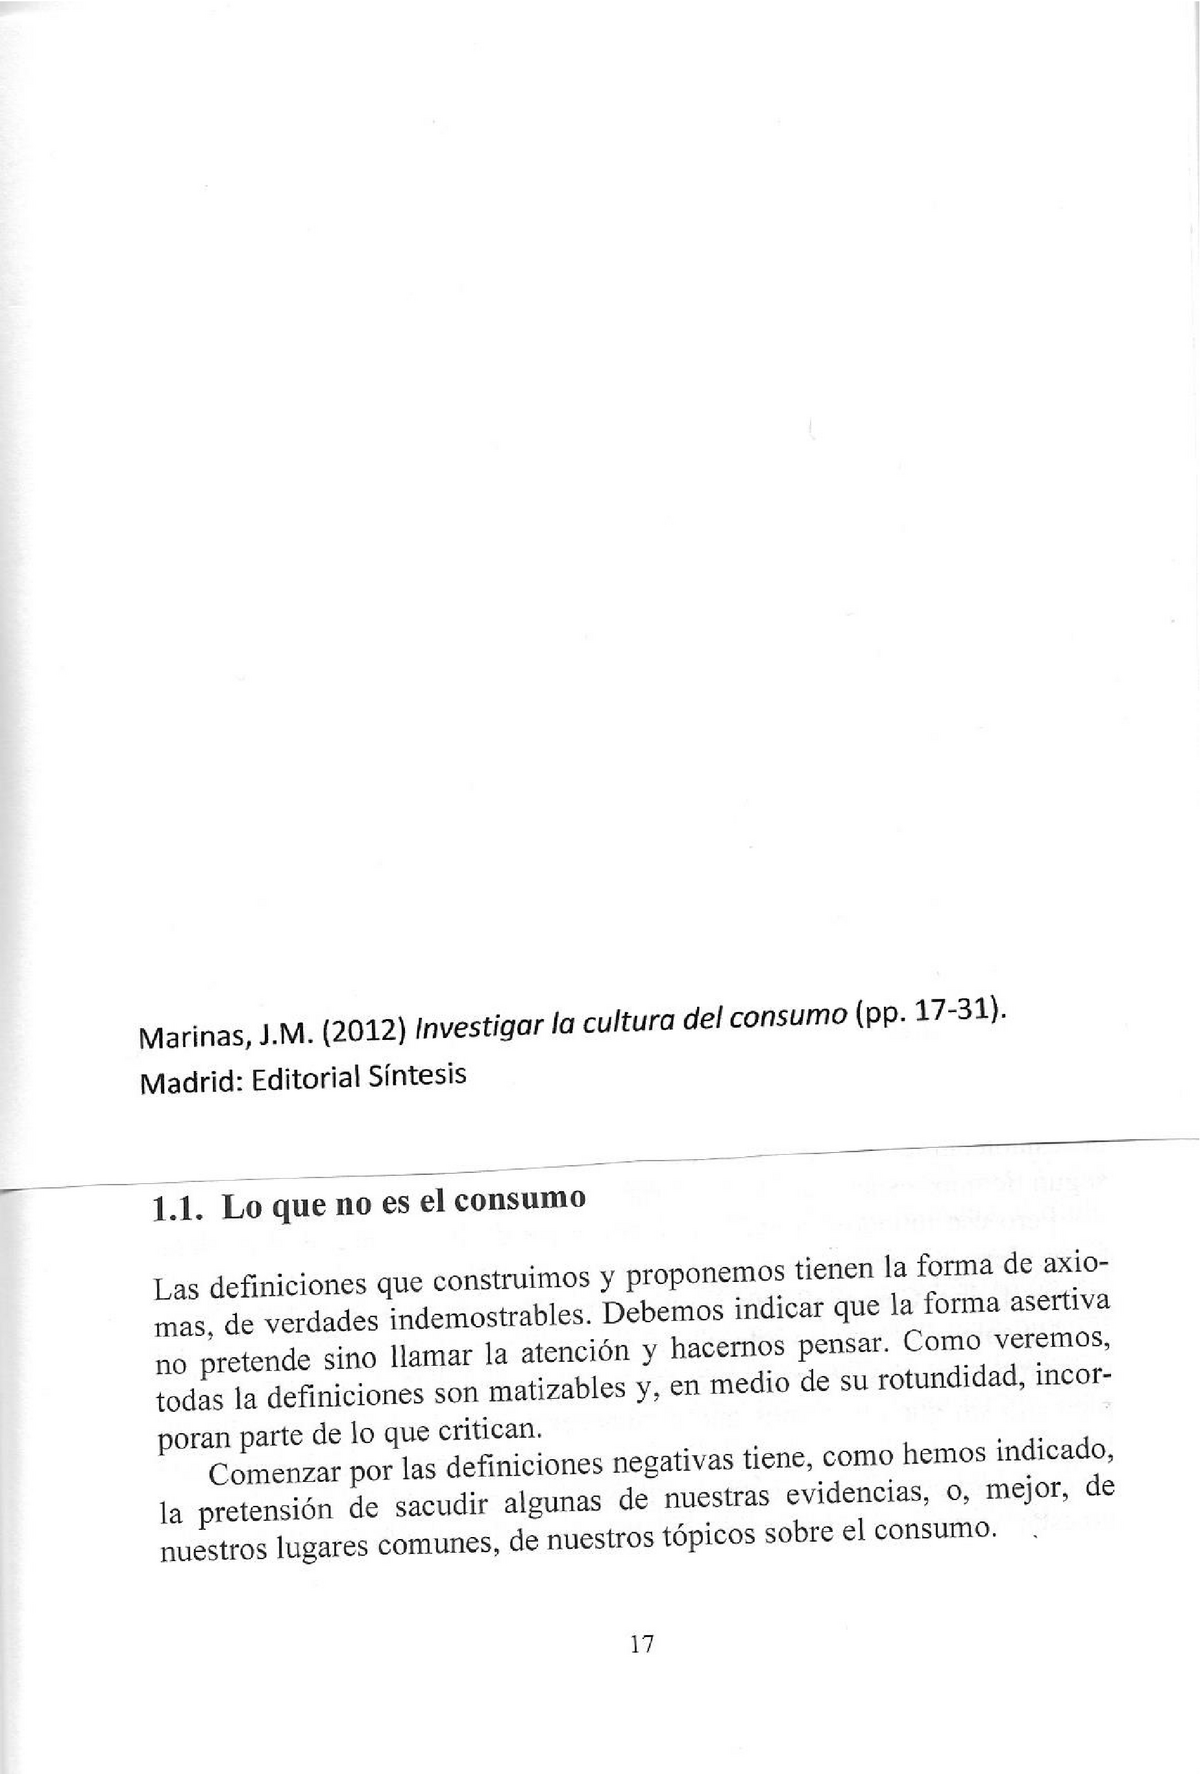 Marinas 2012 Investigar Cultura Consumo Sociología Estructura Social Consumo Y Estilos De 9989